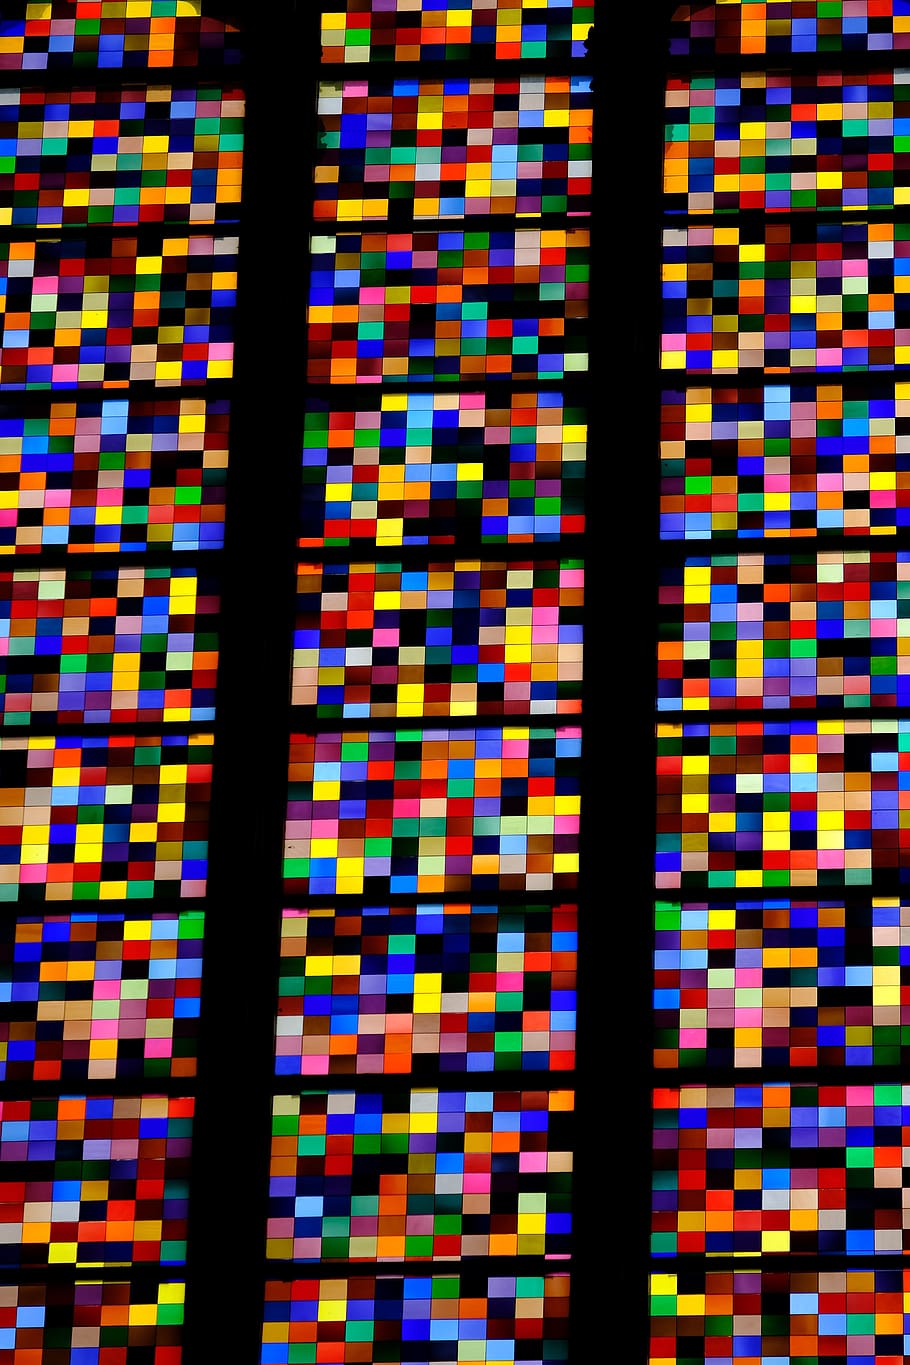 jendela gereja, warna-warni, kaca, katedral cologne, multi-warna, latar belakang, pola, bingkai penuh, tidak ada orang, dalam ruangan